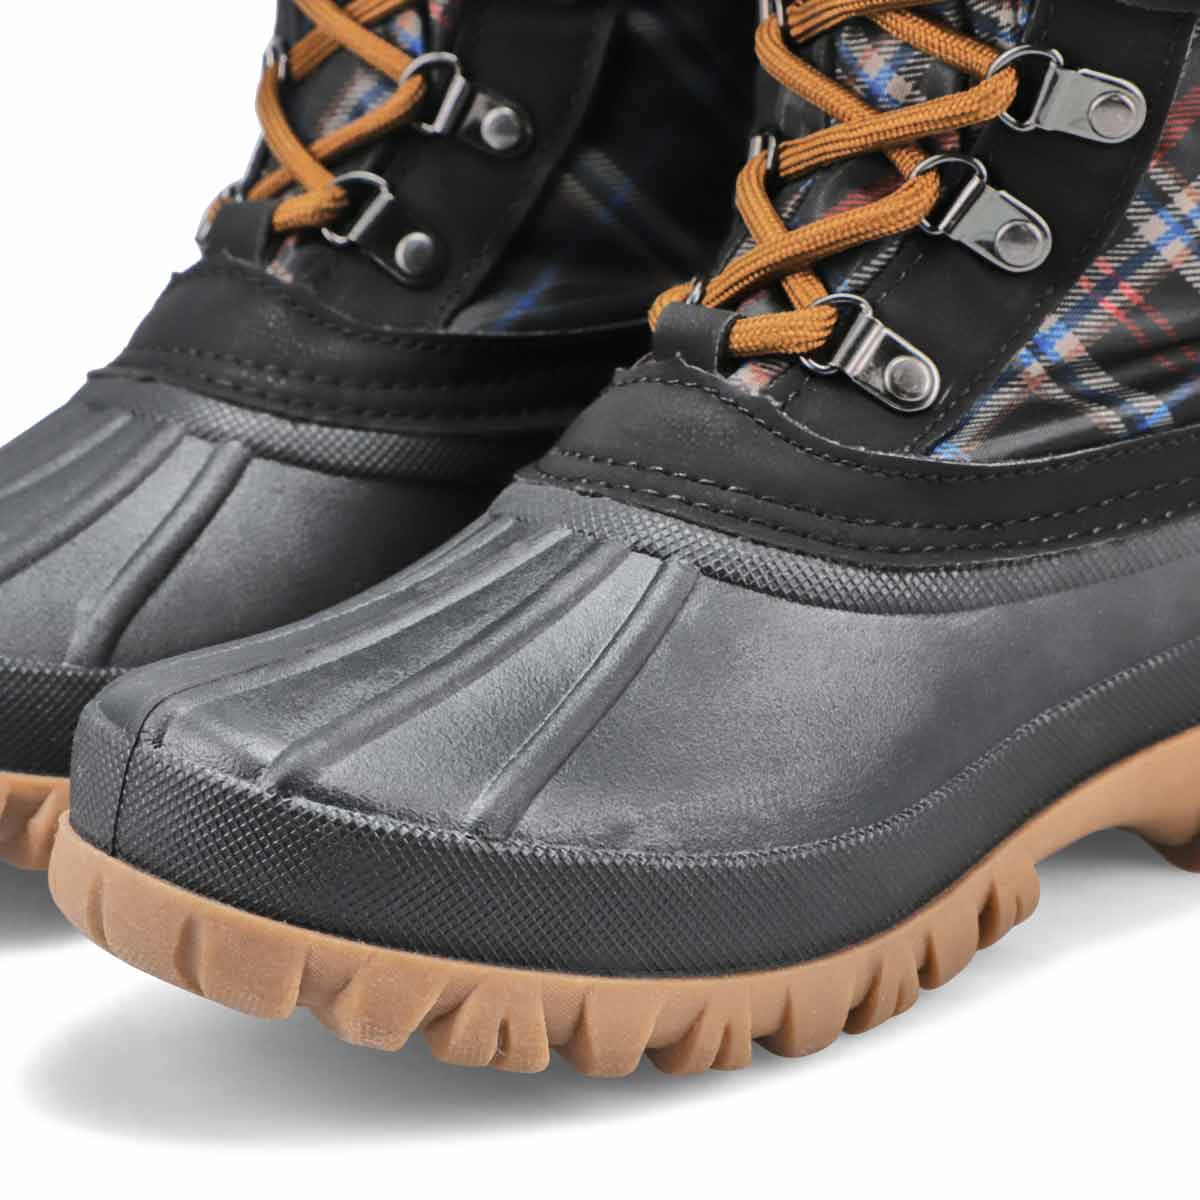 Women's CREEK black plaid waterproof winter boots